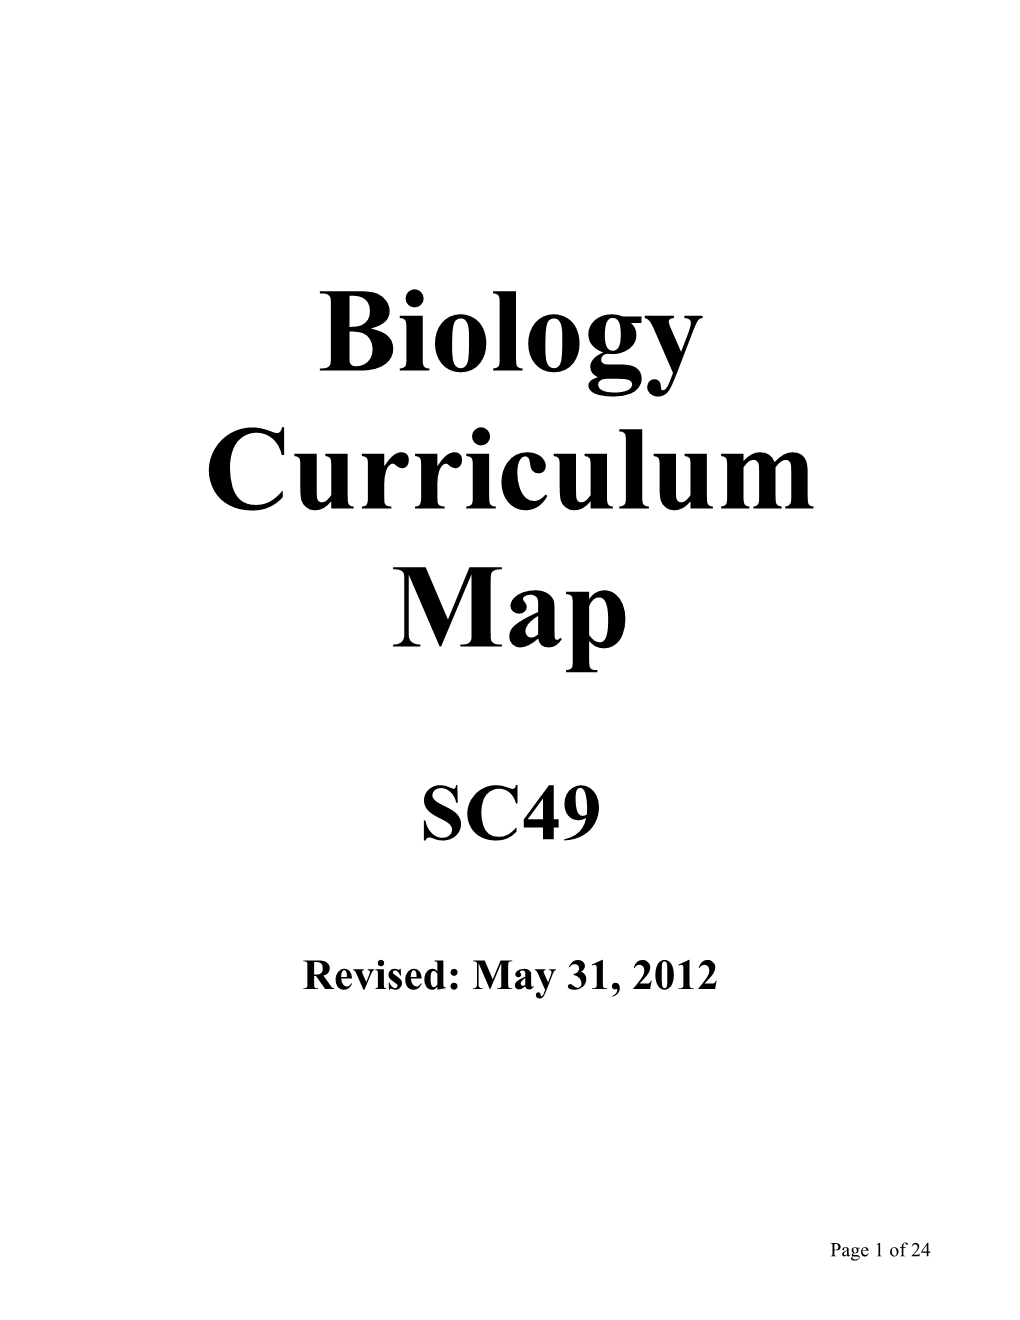 Biology Curriculum Map